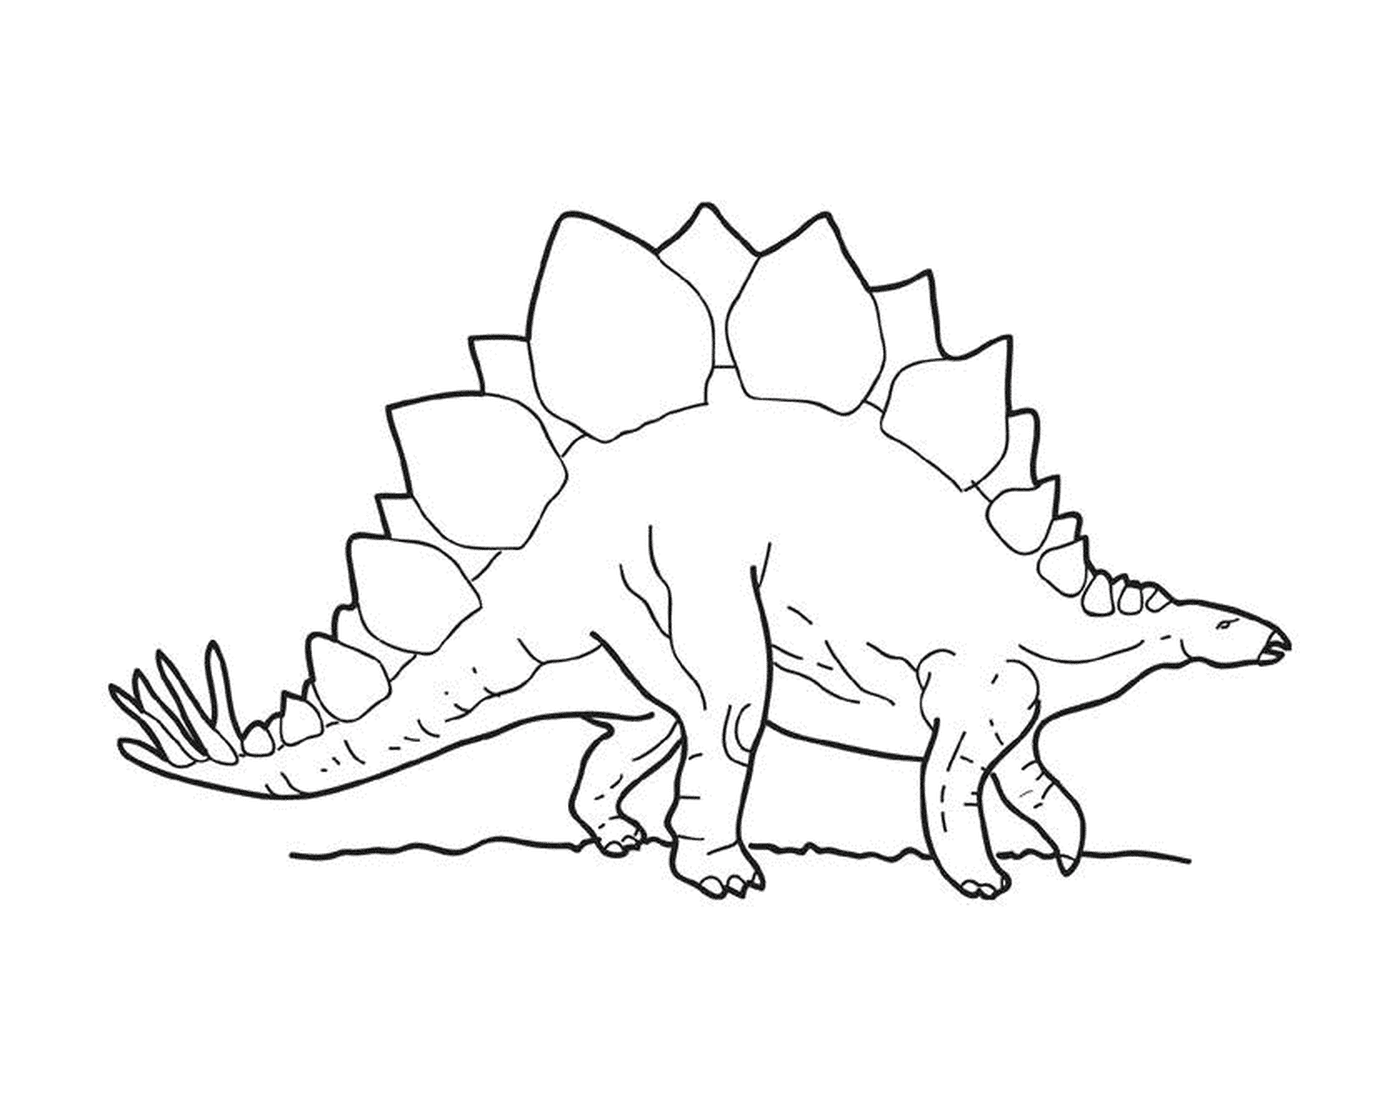  Uno stegosauro in piedi 